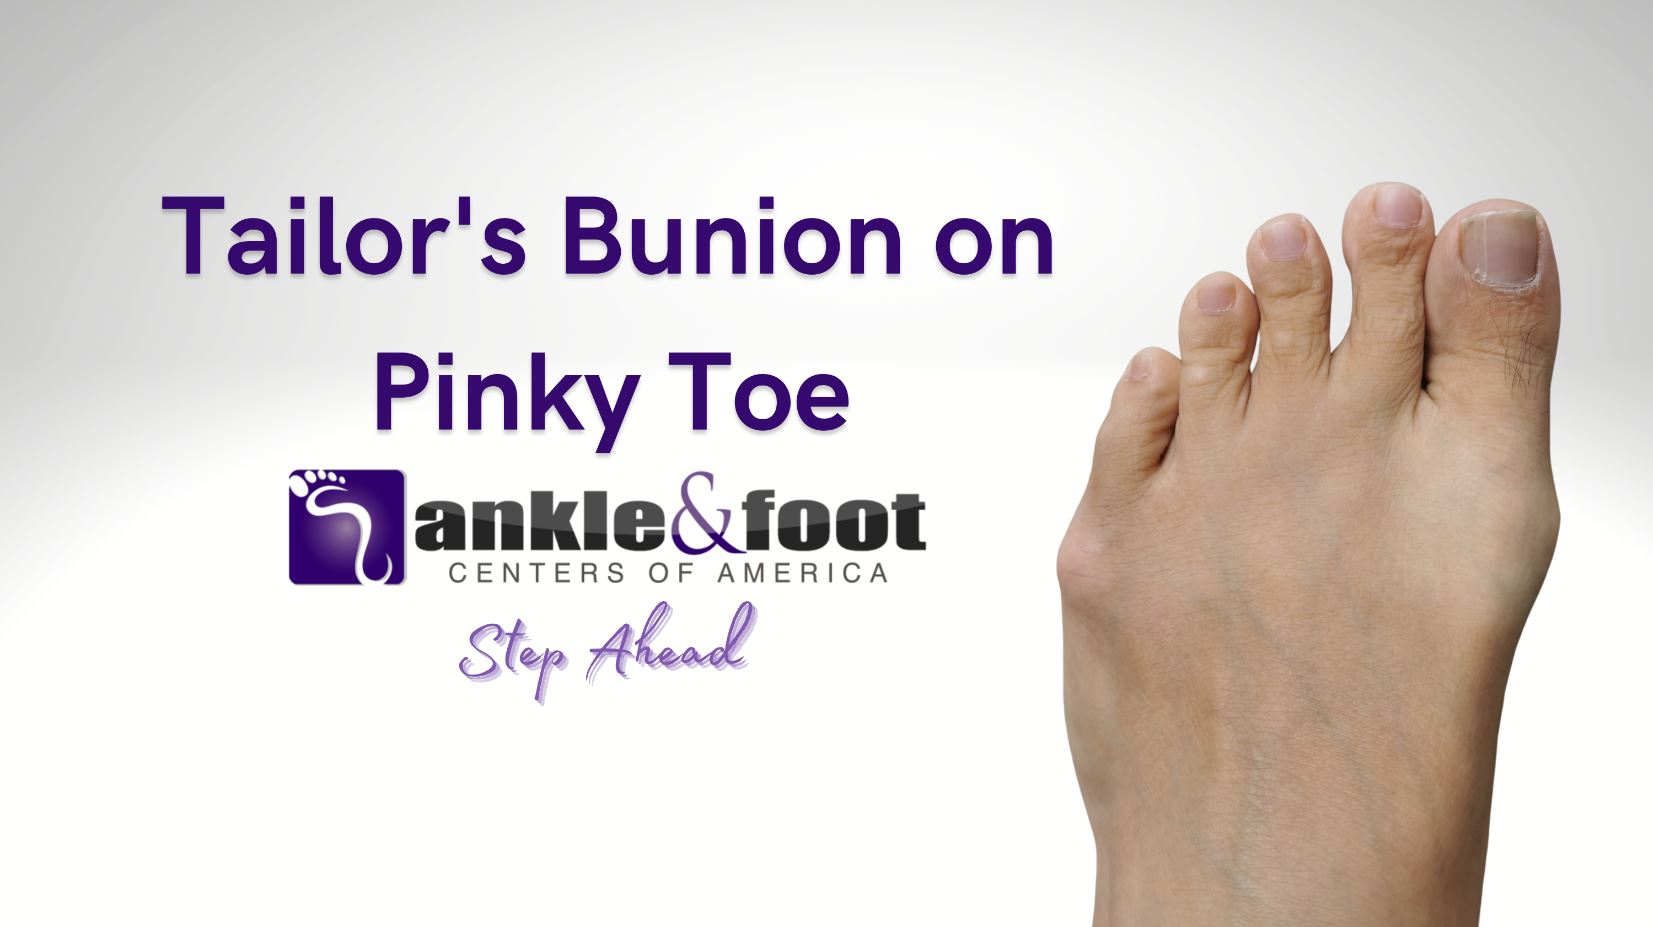 Tailor’s Bunion on Pinky Toe – Bunionette